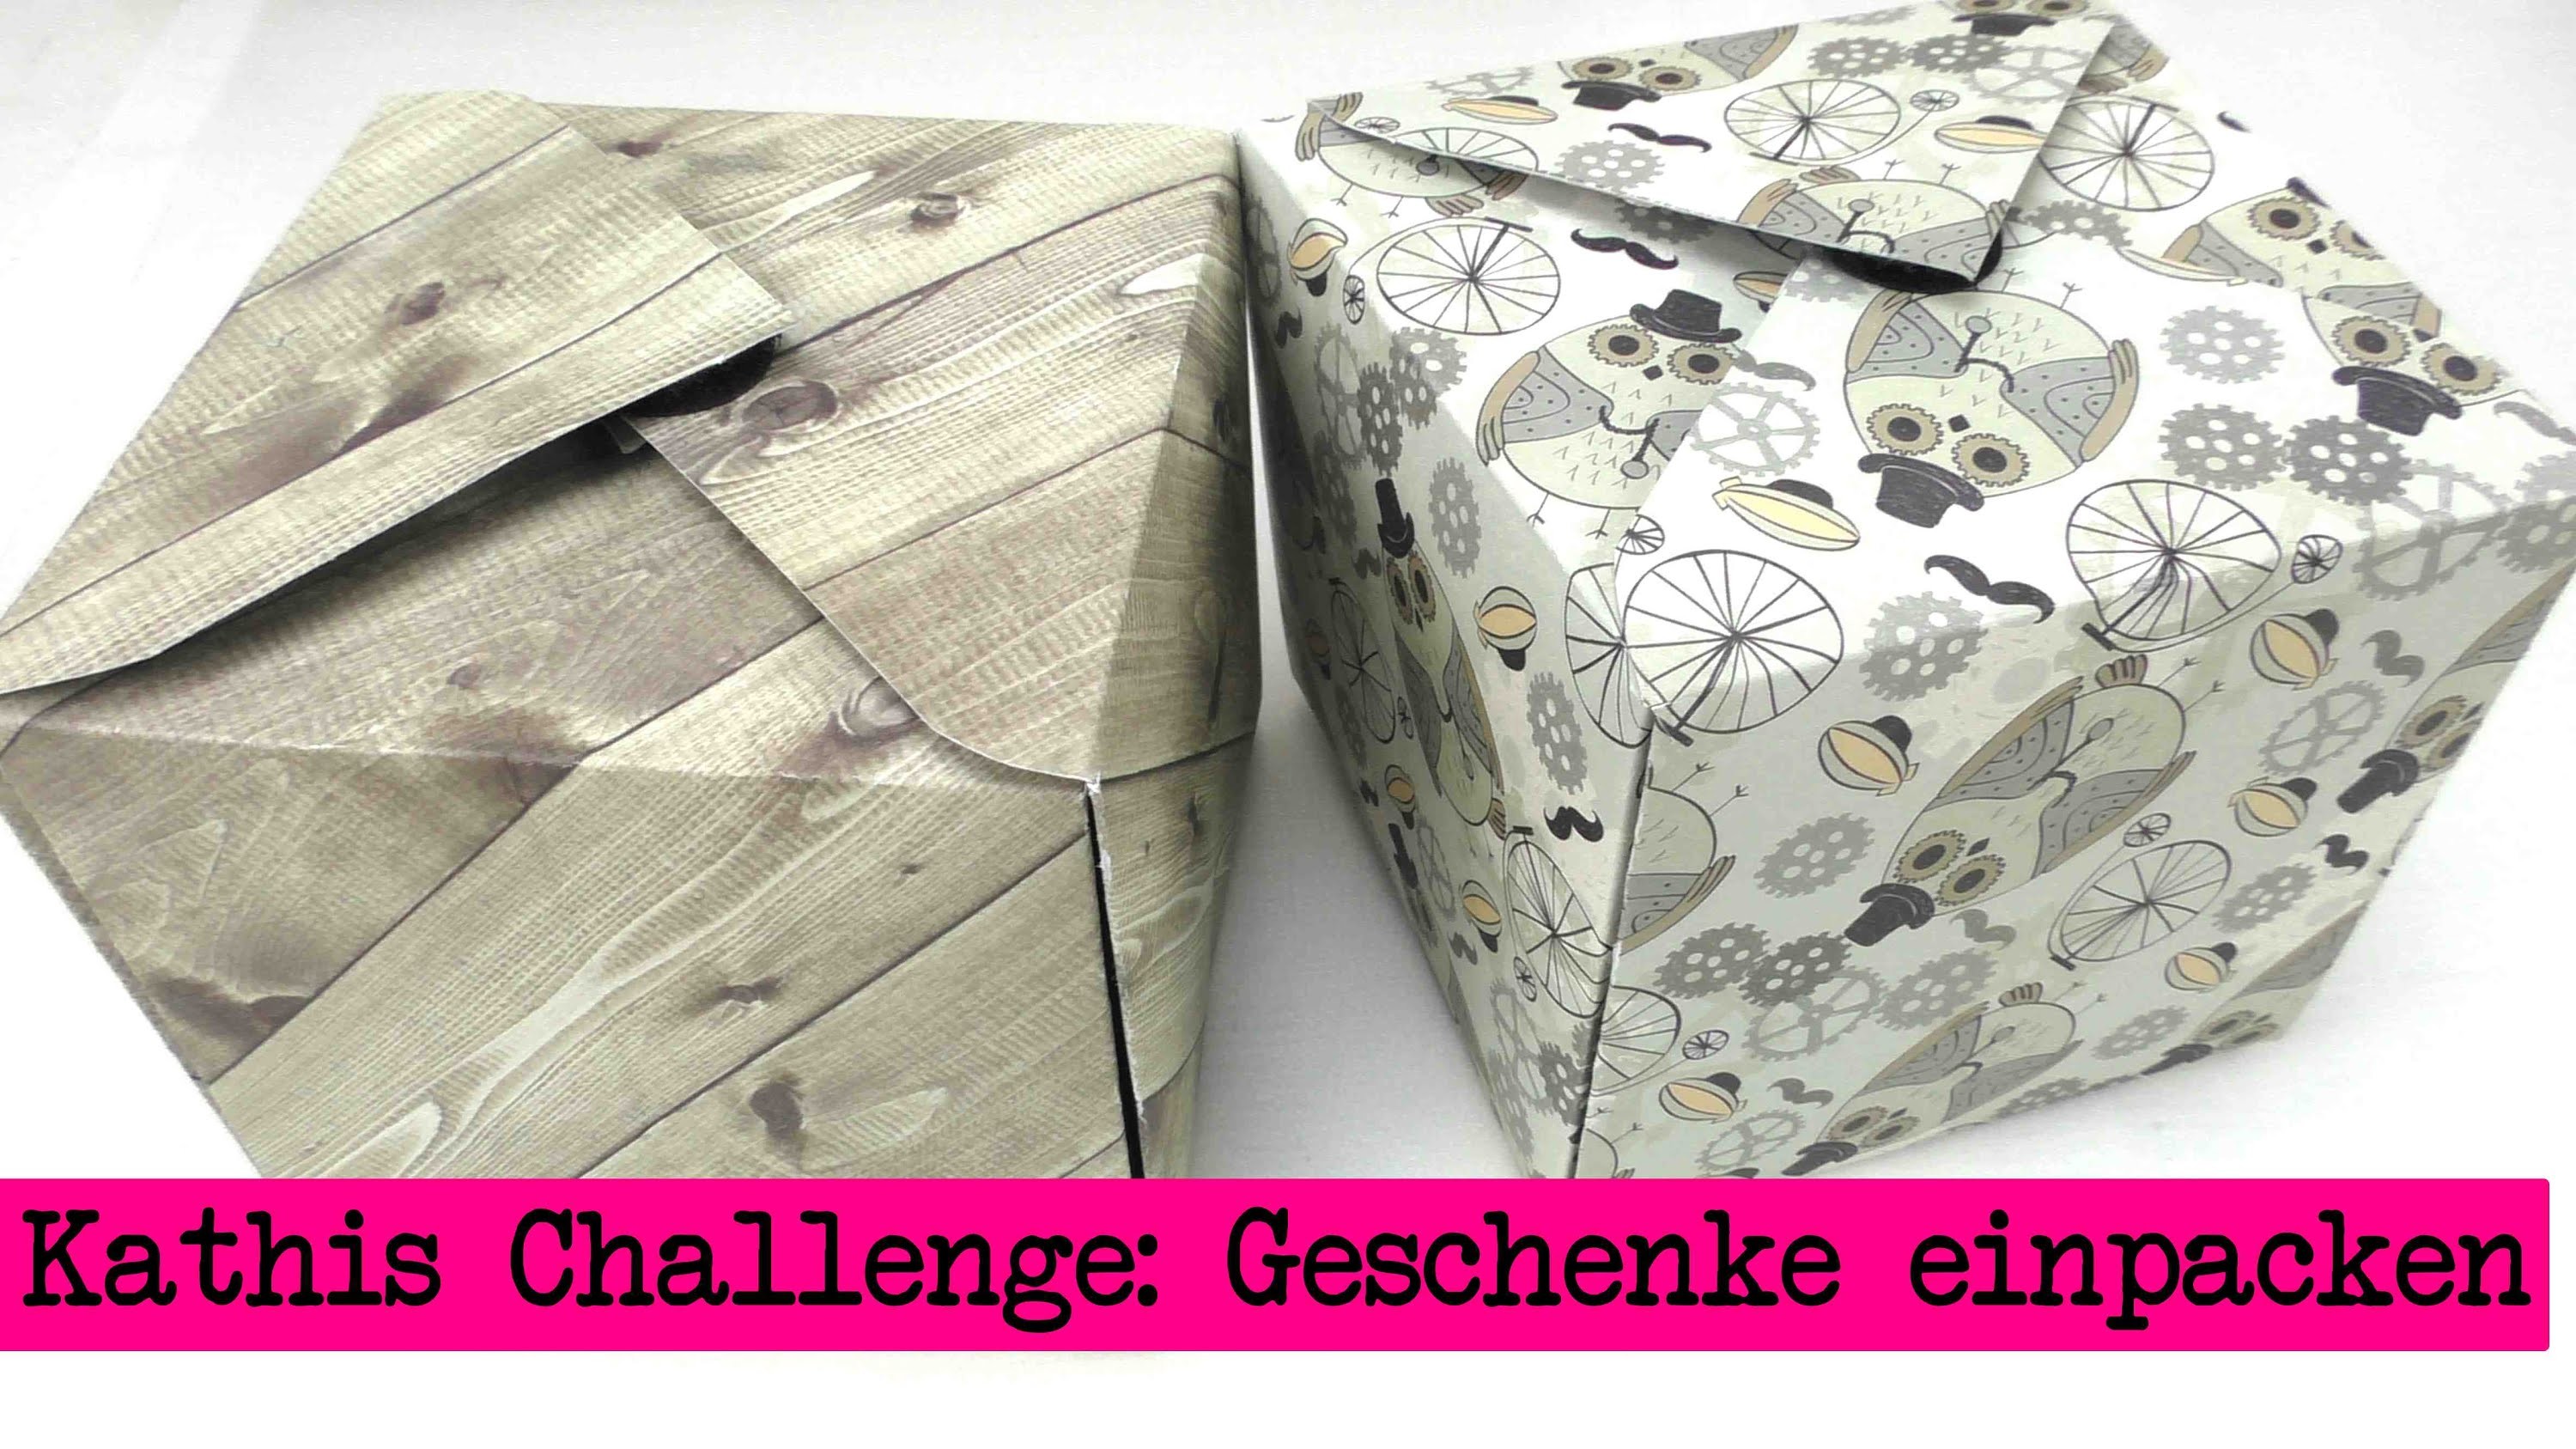 Diy Inspiration Challenge 17 Geschenke Verpacken Kathis Challenge Tutorial Do It Yourself 1692